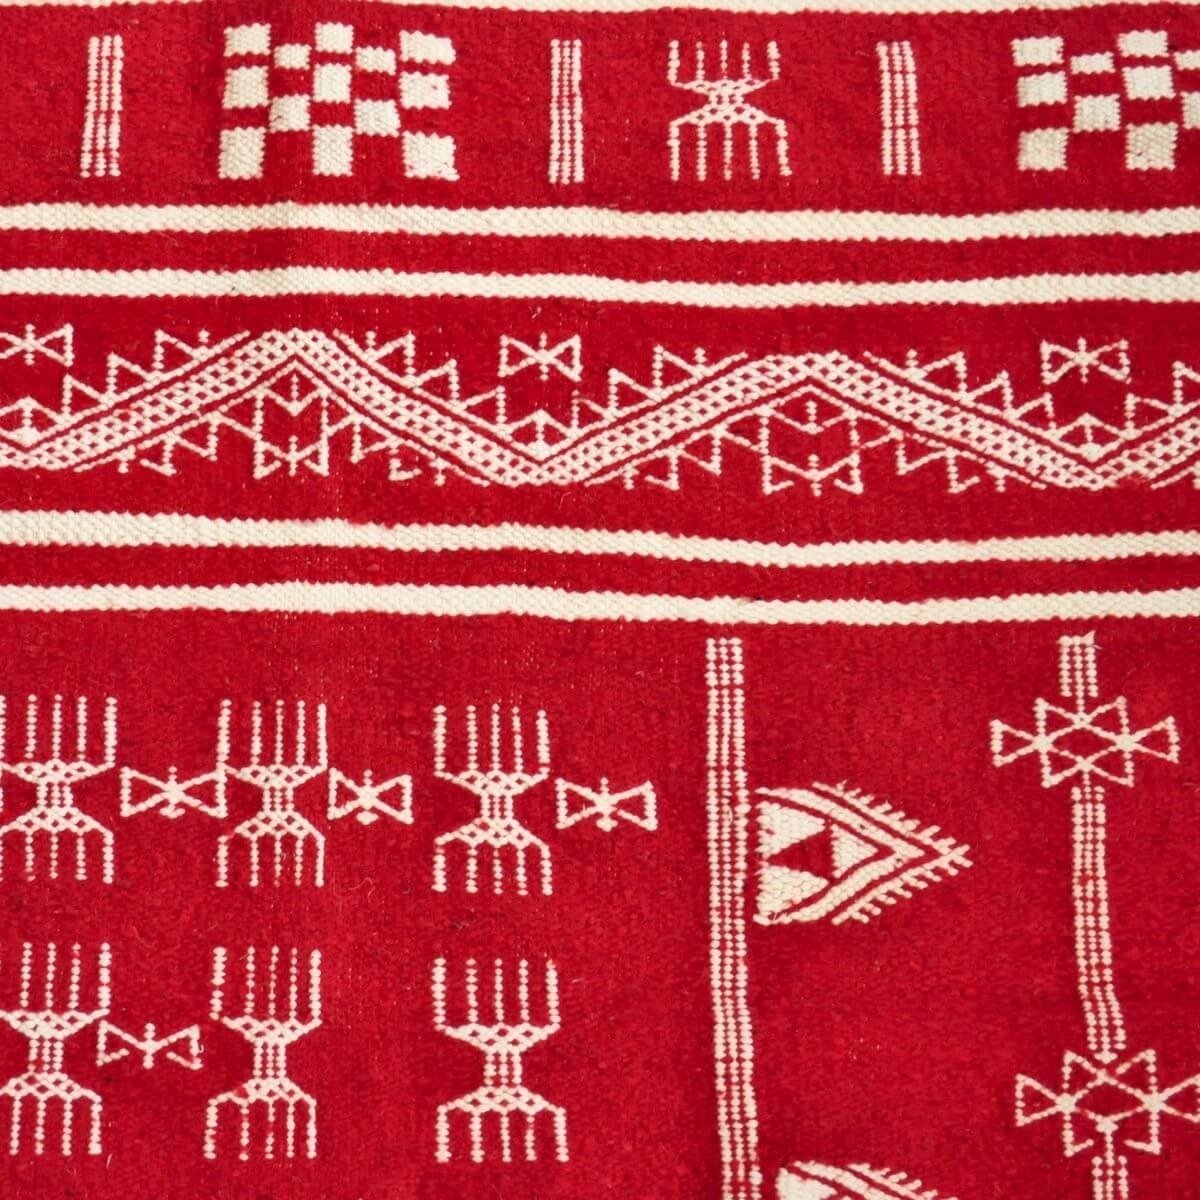 Berber Teppich Teppich Kelim Granada 100x150 Rot (Handgewebt, Wolle, Tunesien) Tunesischer Kelim-Teppich im marokkanischen Stil.